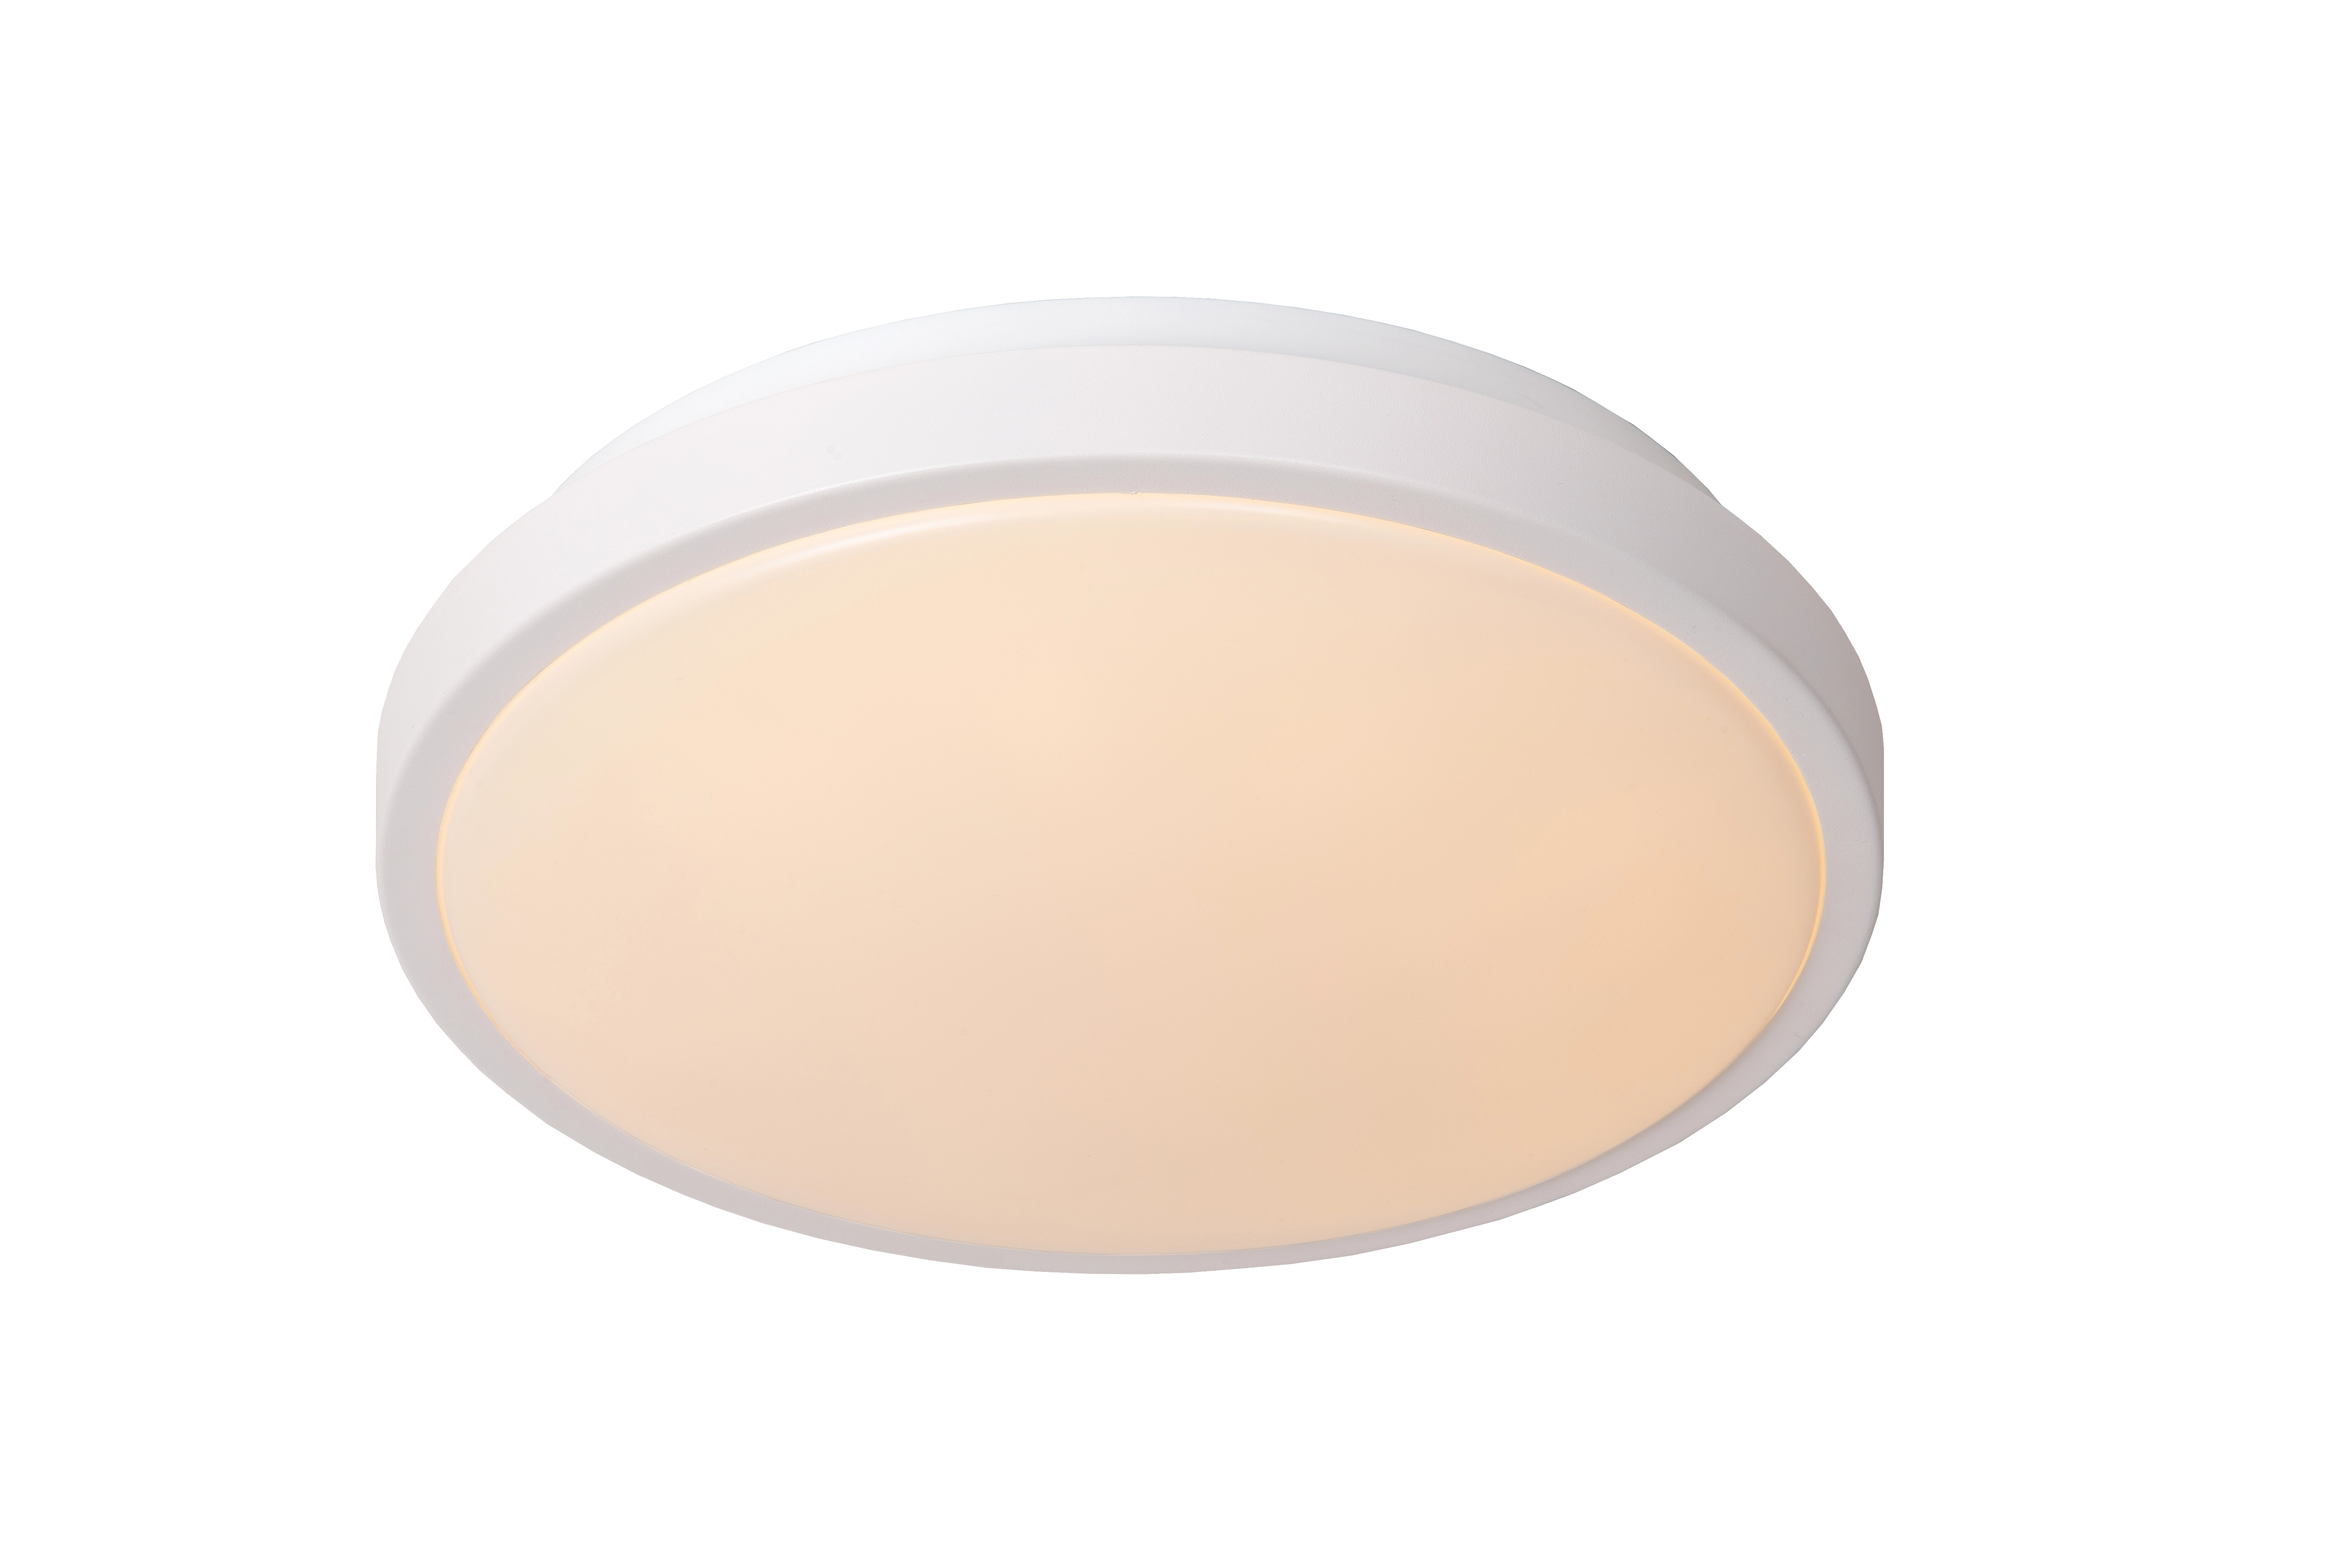 LU 79110/30/31 Lucide DASHER - Flush ceiling light Bathroom - Ø 29,3 cm - LED - 1x12W 2700K - IP44 -